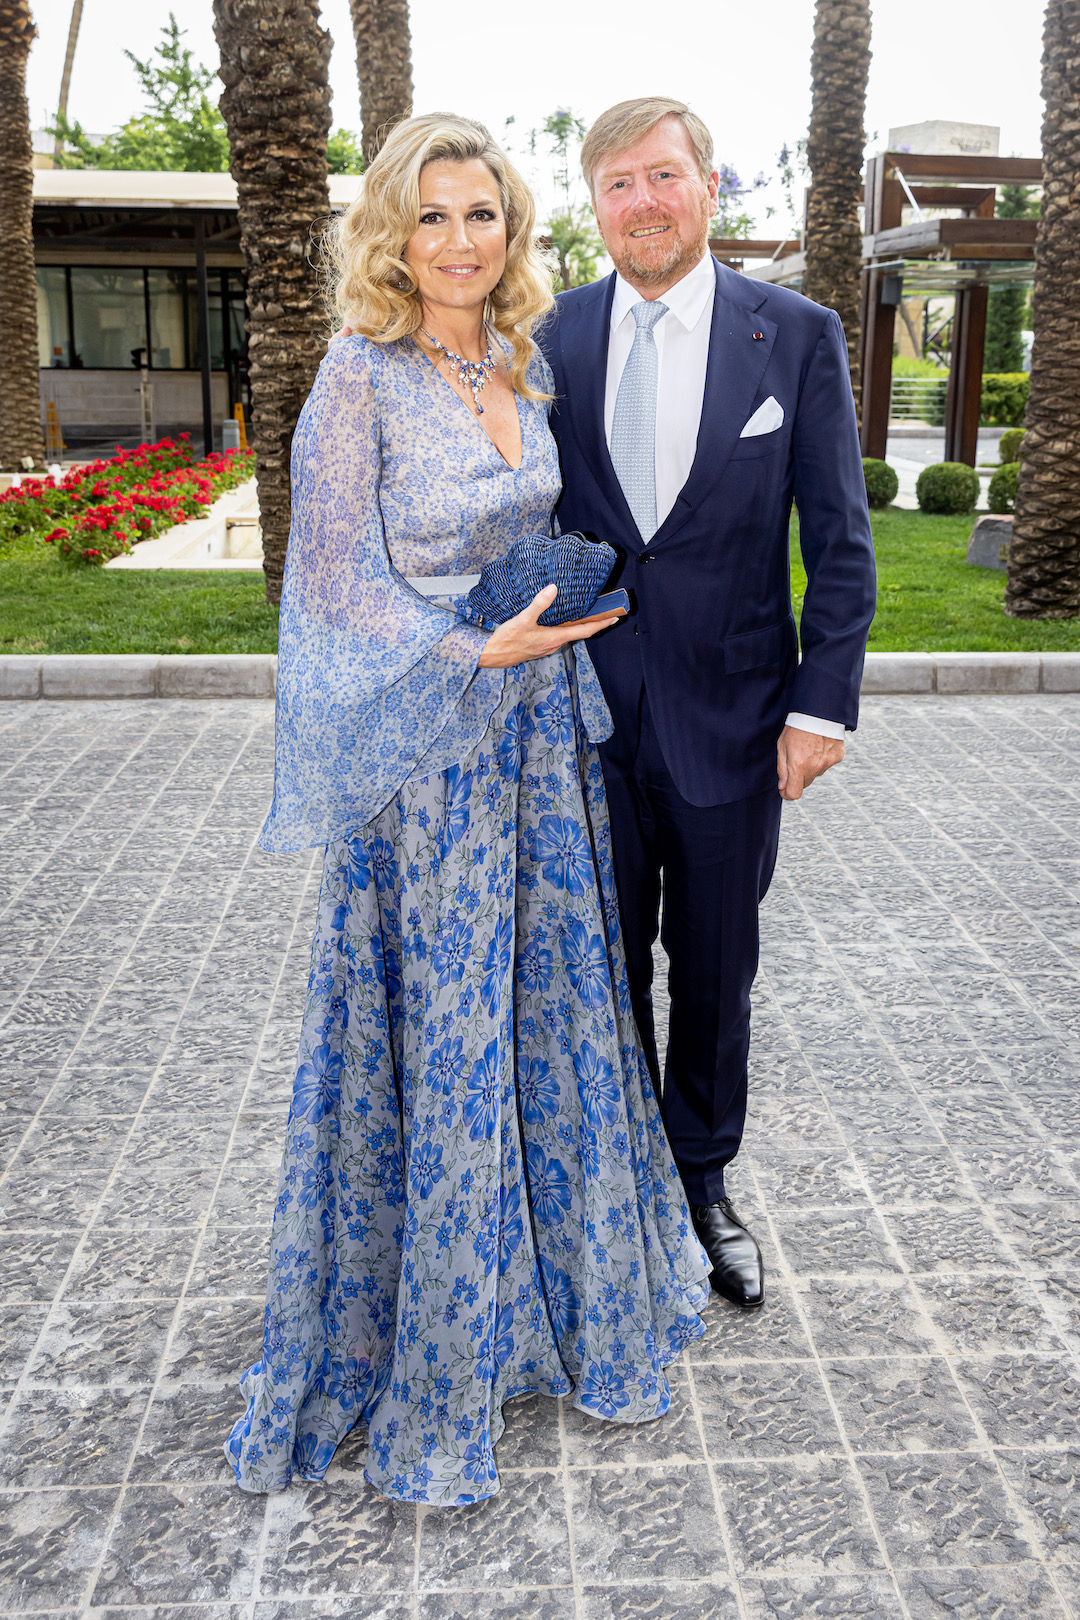 Hochzeit von Kronprinz Hussein: Königin Maxima und König Willem-Alexander